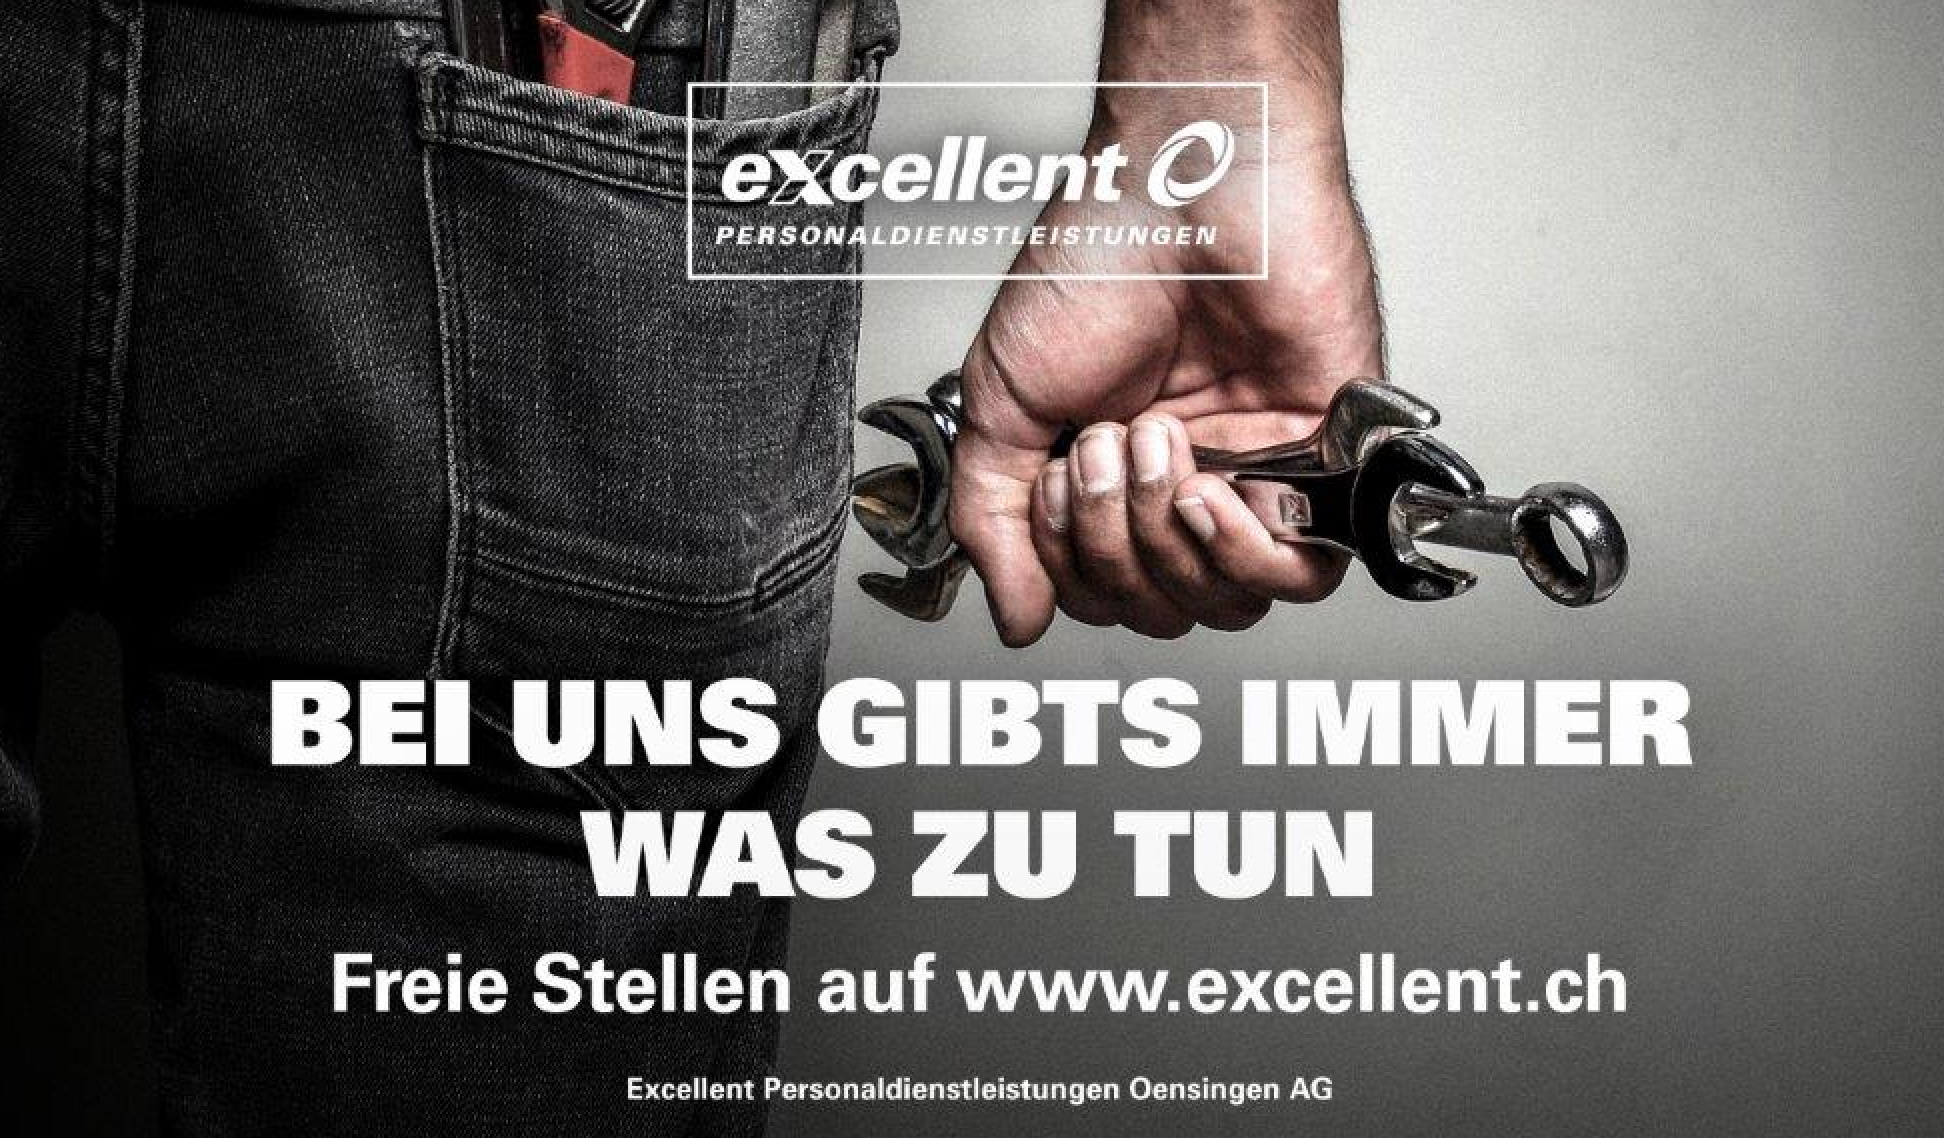 Excellent Personaldienstleistungen Basel GmbH